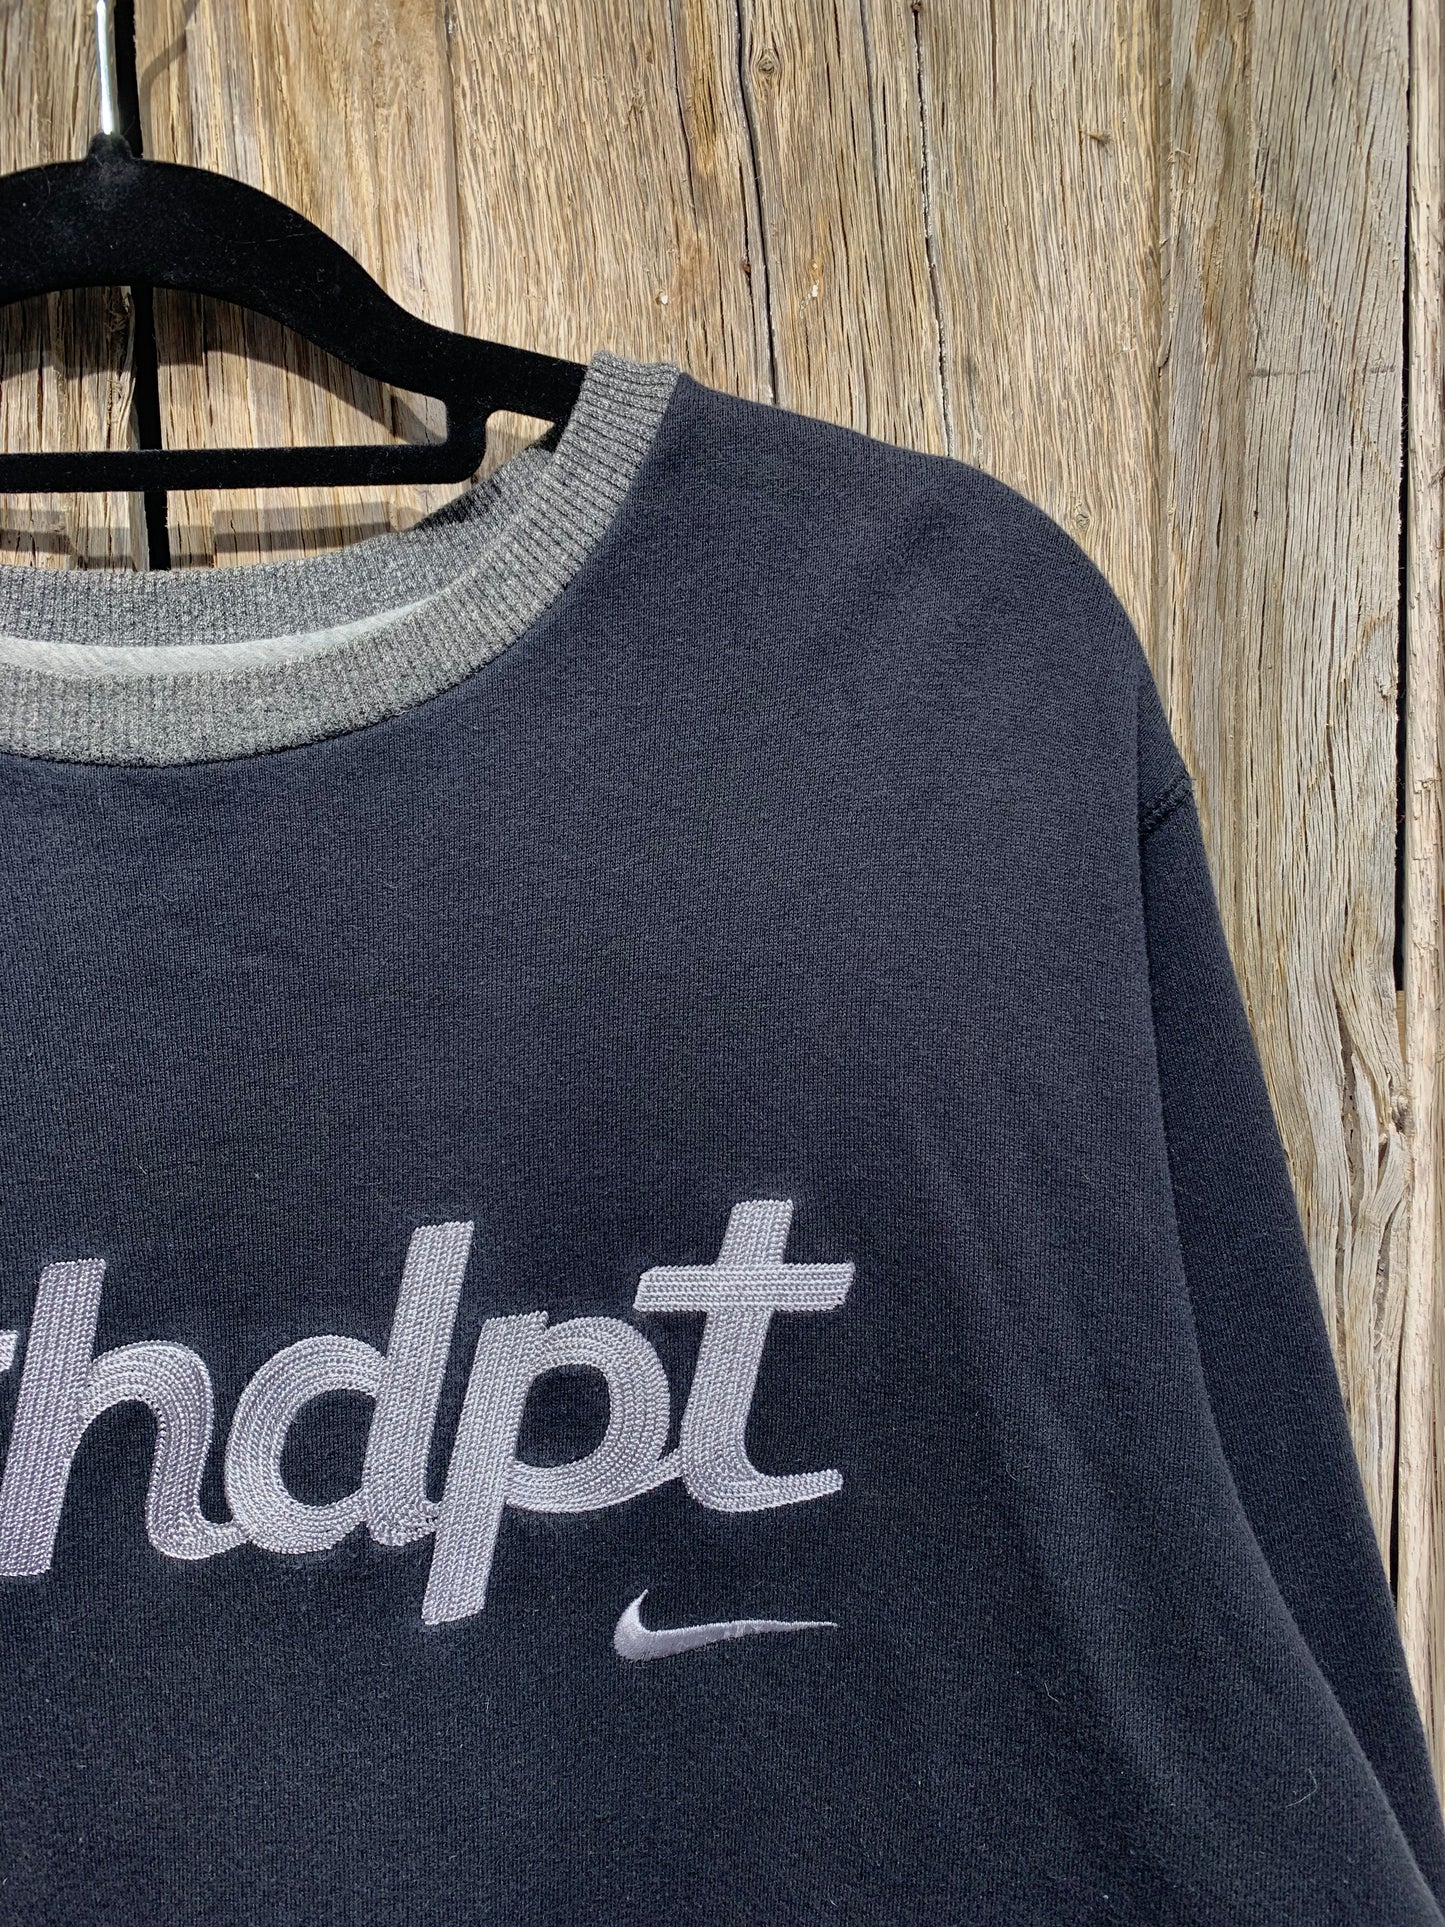 Vintage Nike Athdpt Chainstitch Logo Sweatshirt